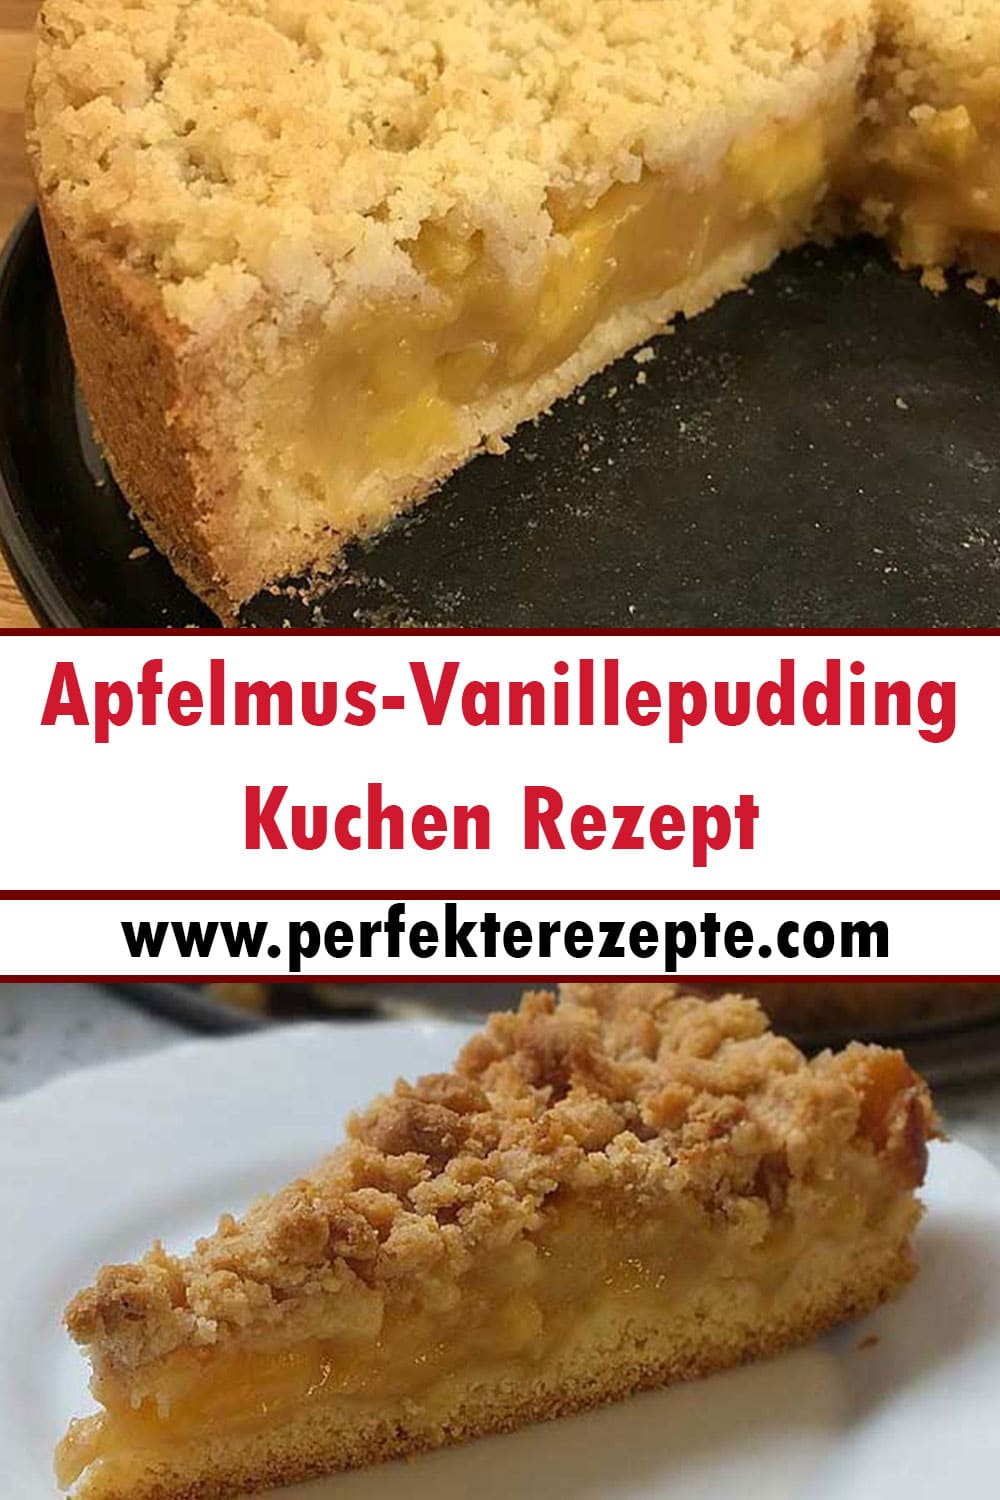 Apfelmus-Vanillepudding-Kuchen Rezept